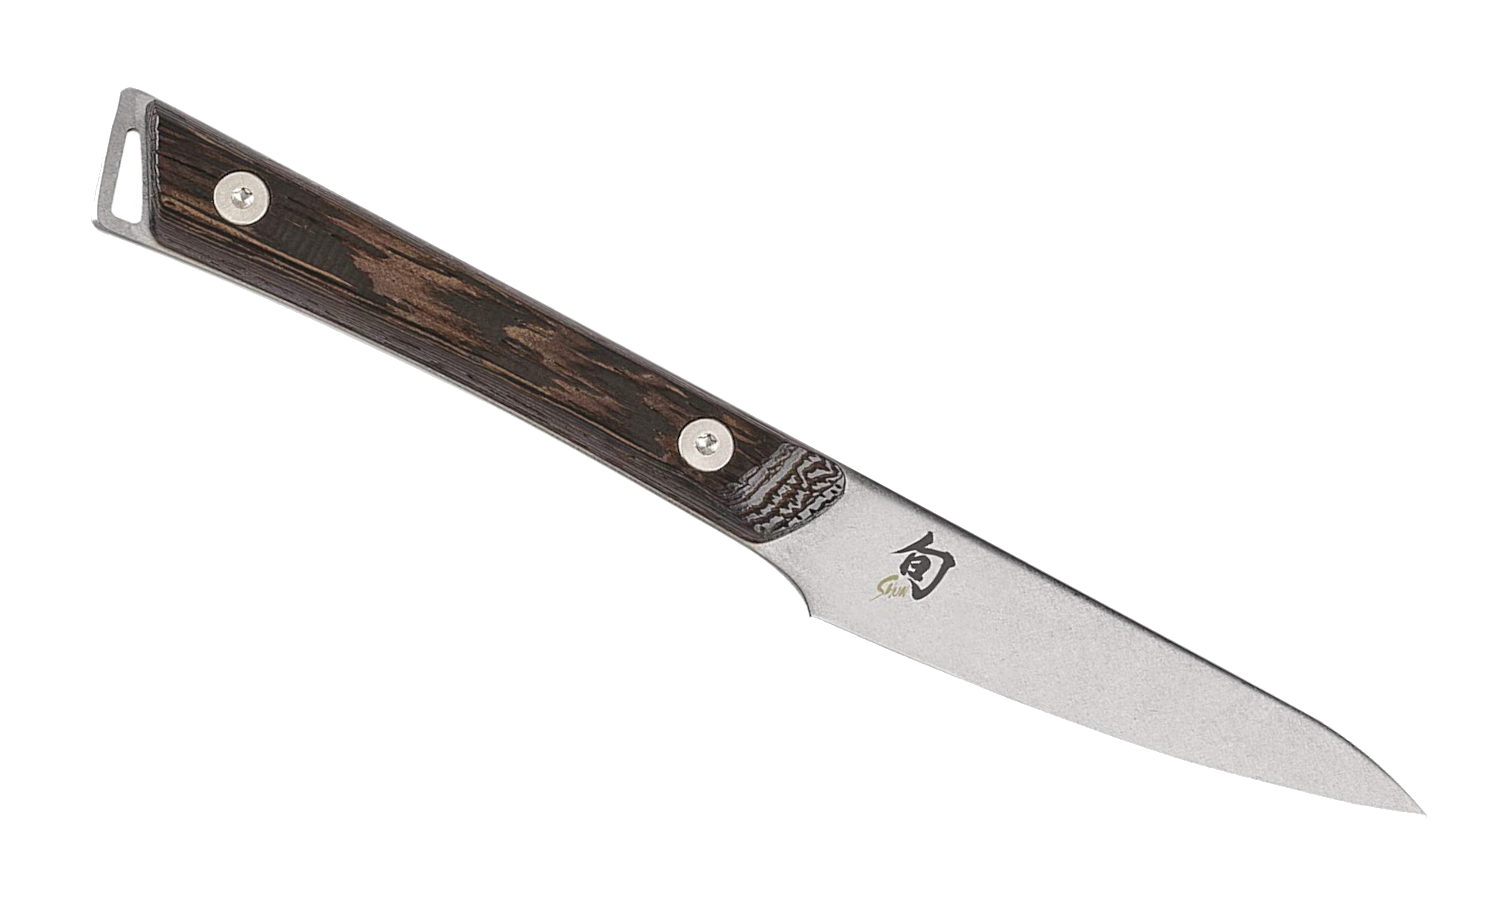 El mejor cuchillo para pelar: Shun Kanso de 3.5 pulgadas